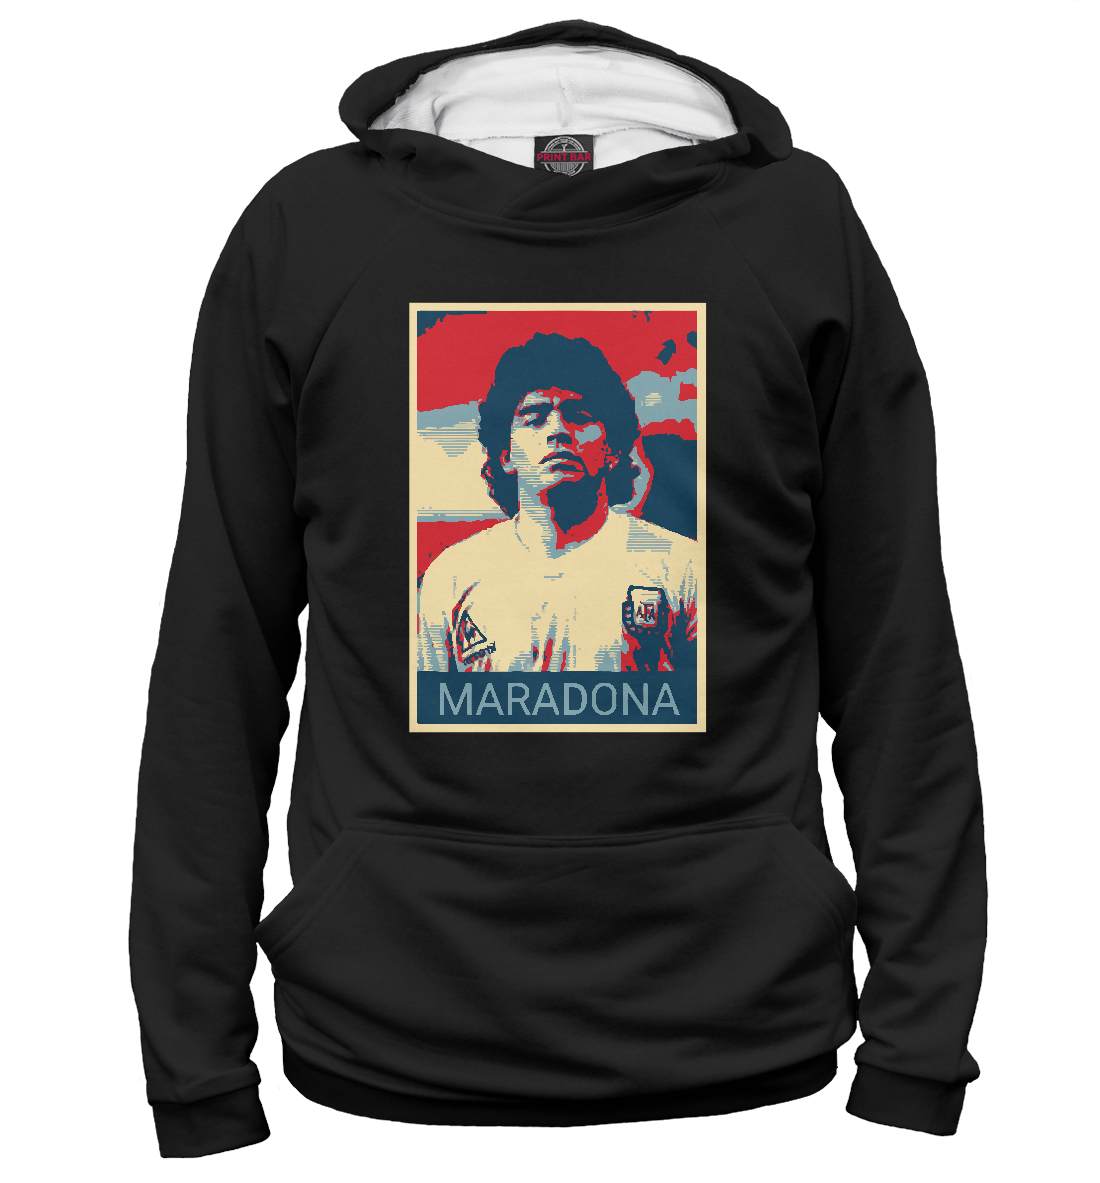 Детский Худи Maradona для девочек, артикул FLT-836145-hud-1mp